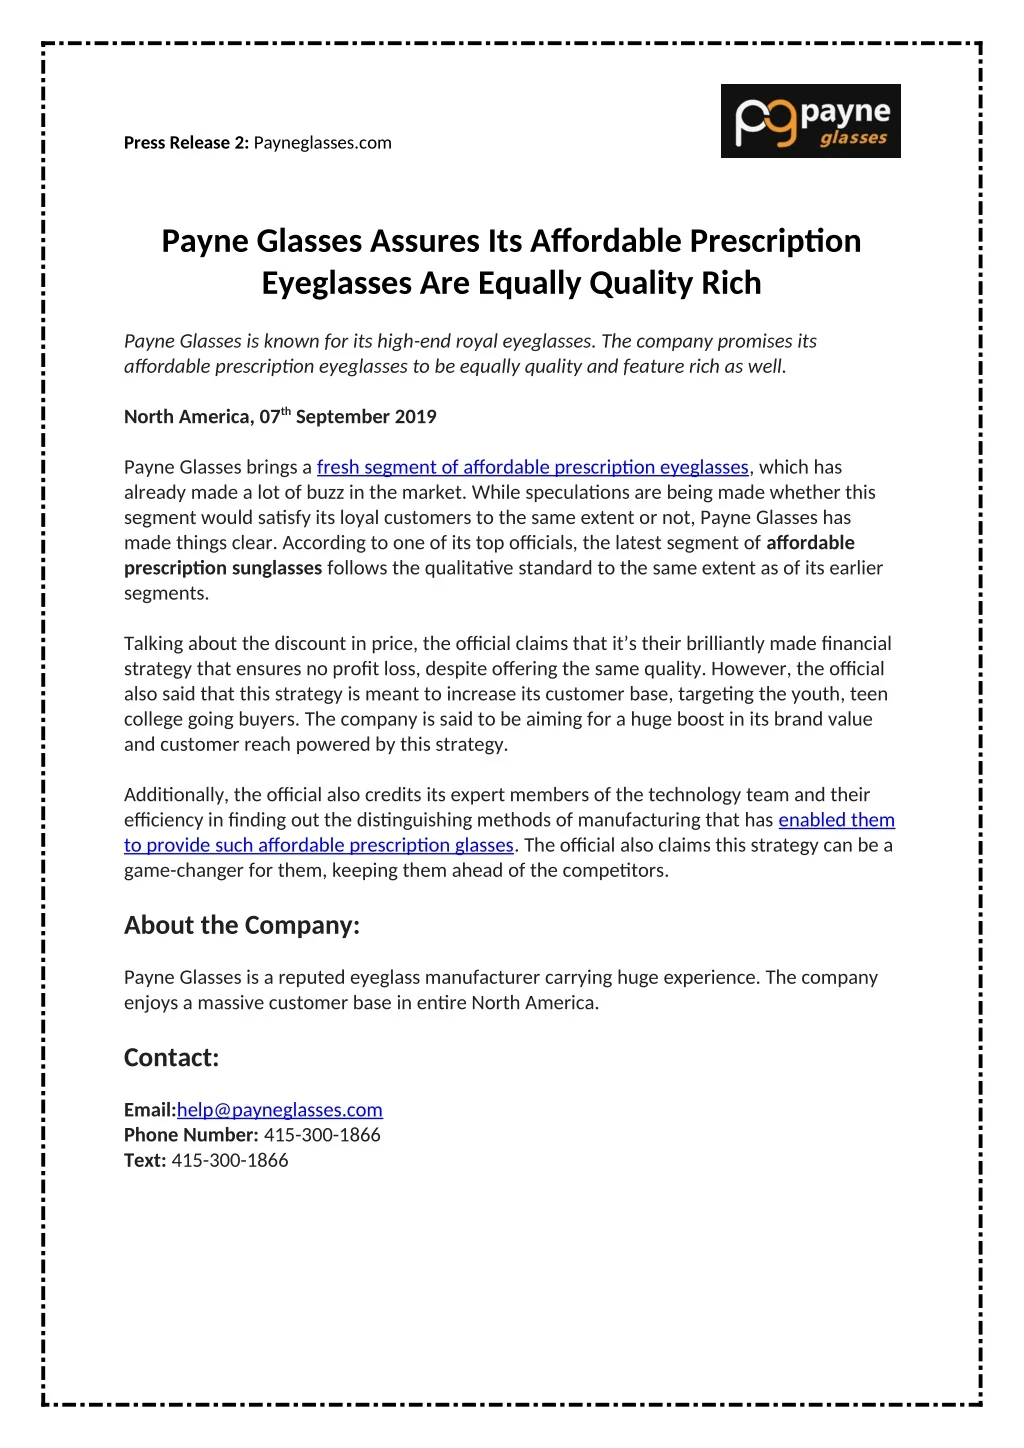 press release 2 payneglasses com